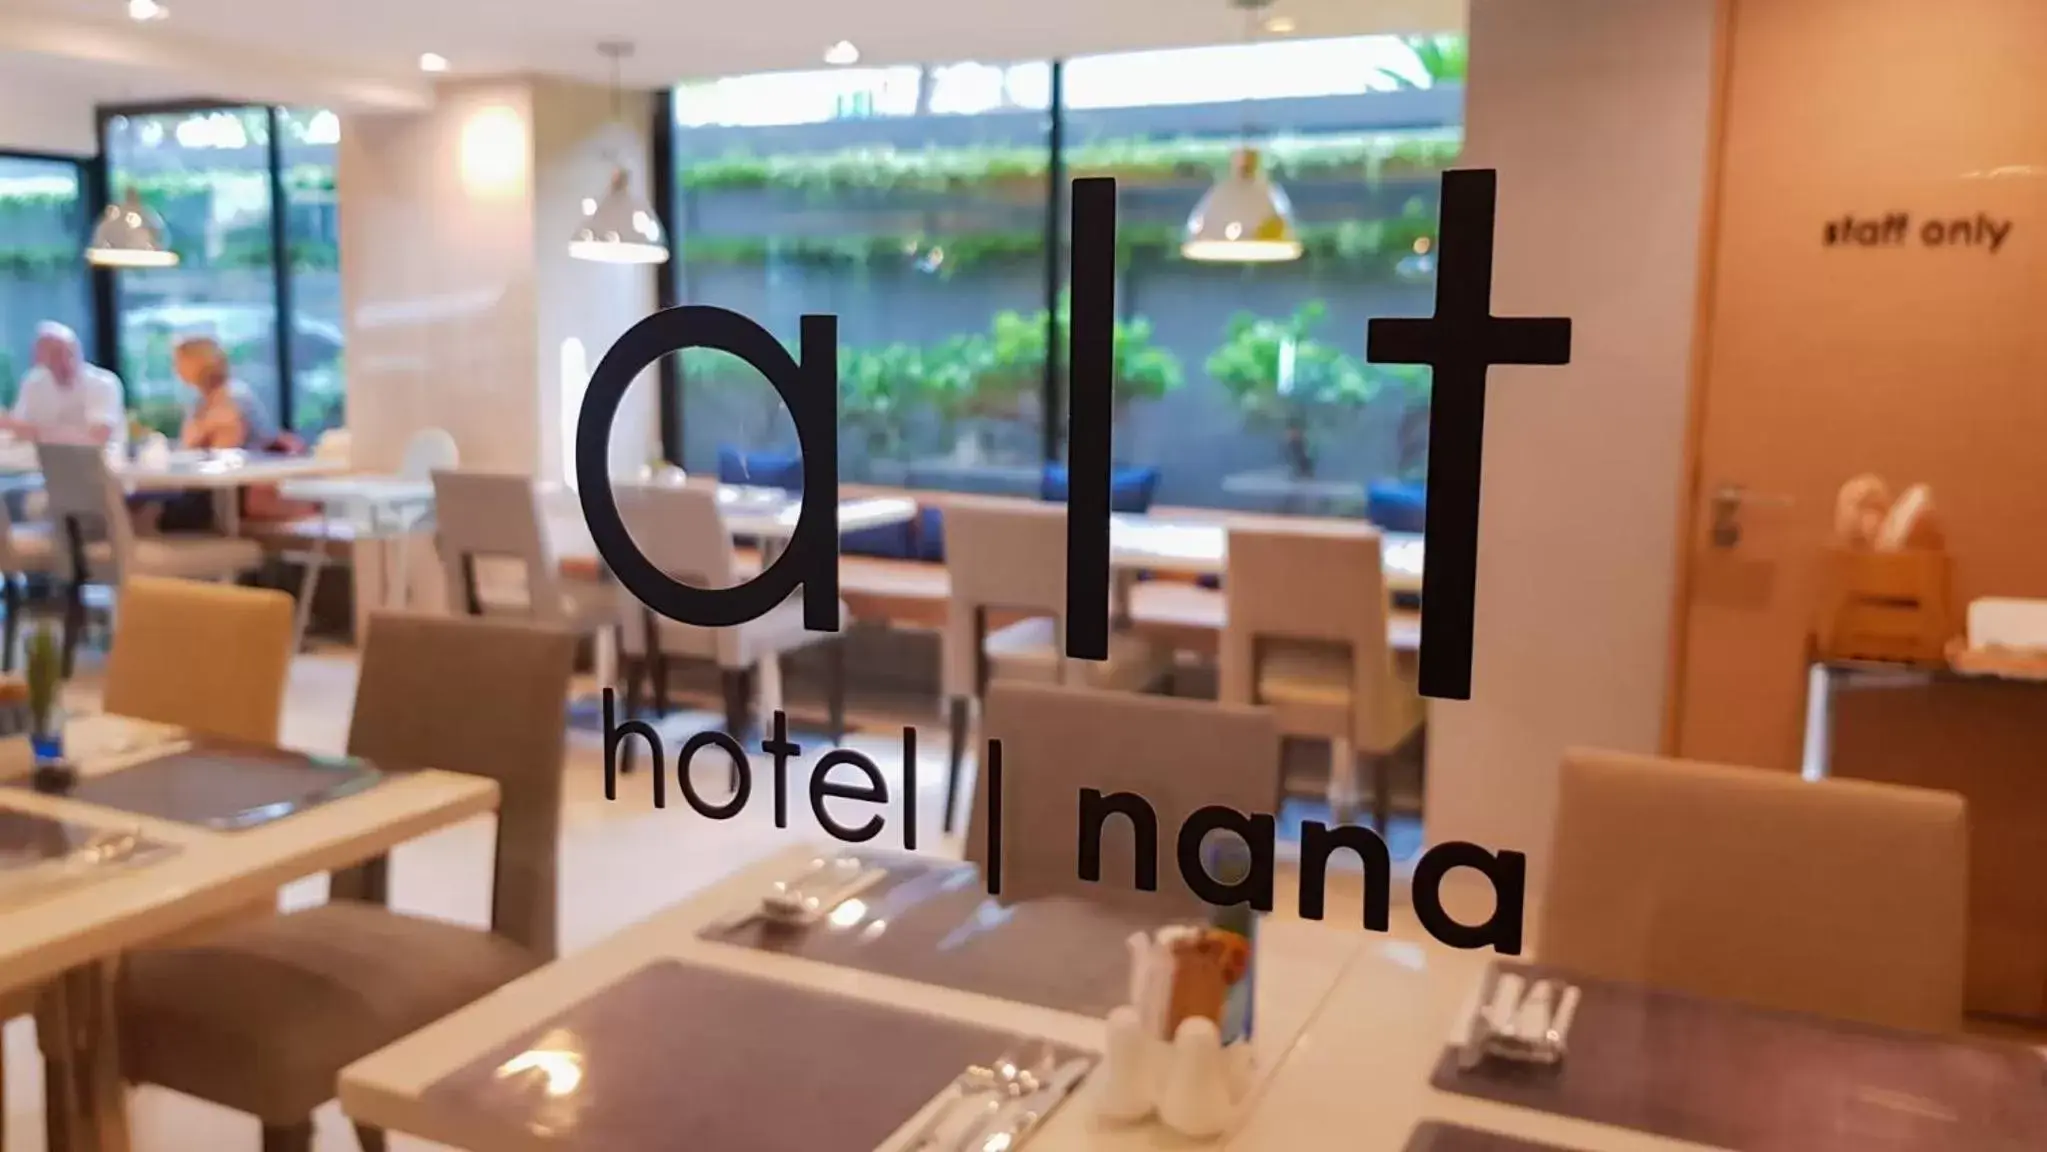 Buffet breakfast in Alt Hotel Nana by UHG